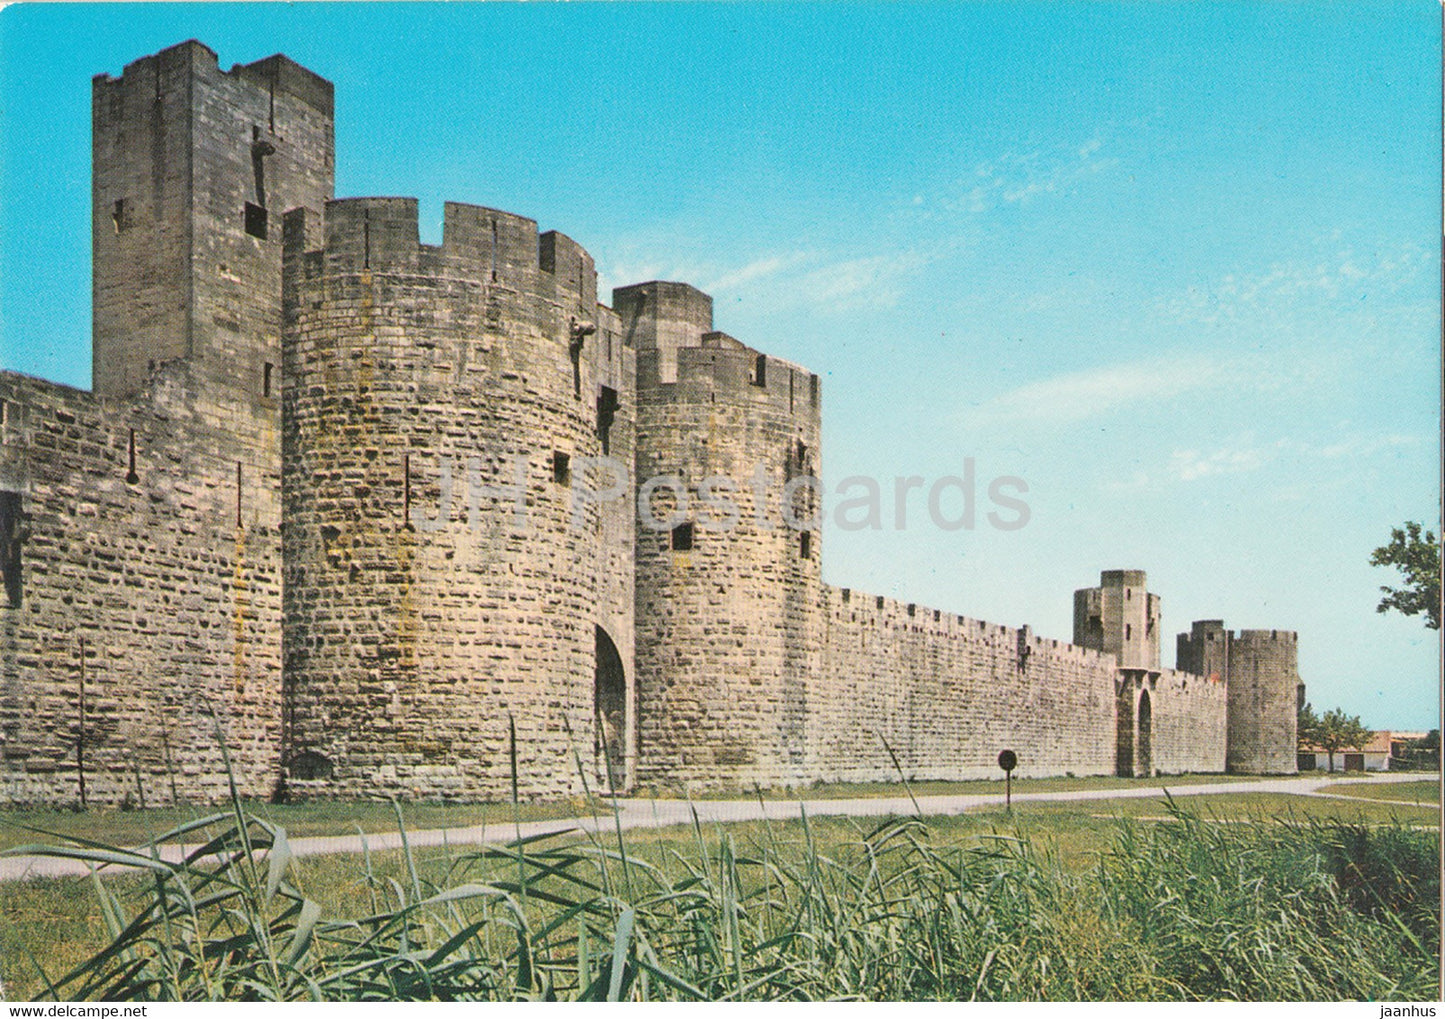 Aigues Mortes - La Ville de Saint Louis - Vue Sur les Remparts - Cote Est - 716 - France - unused - JH Postcards